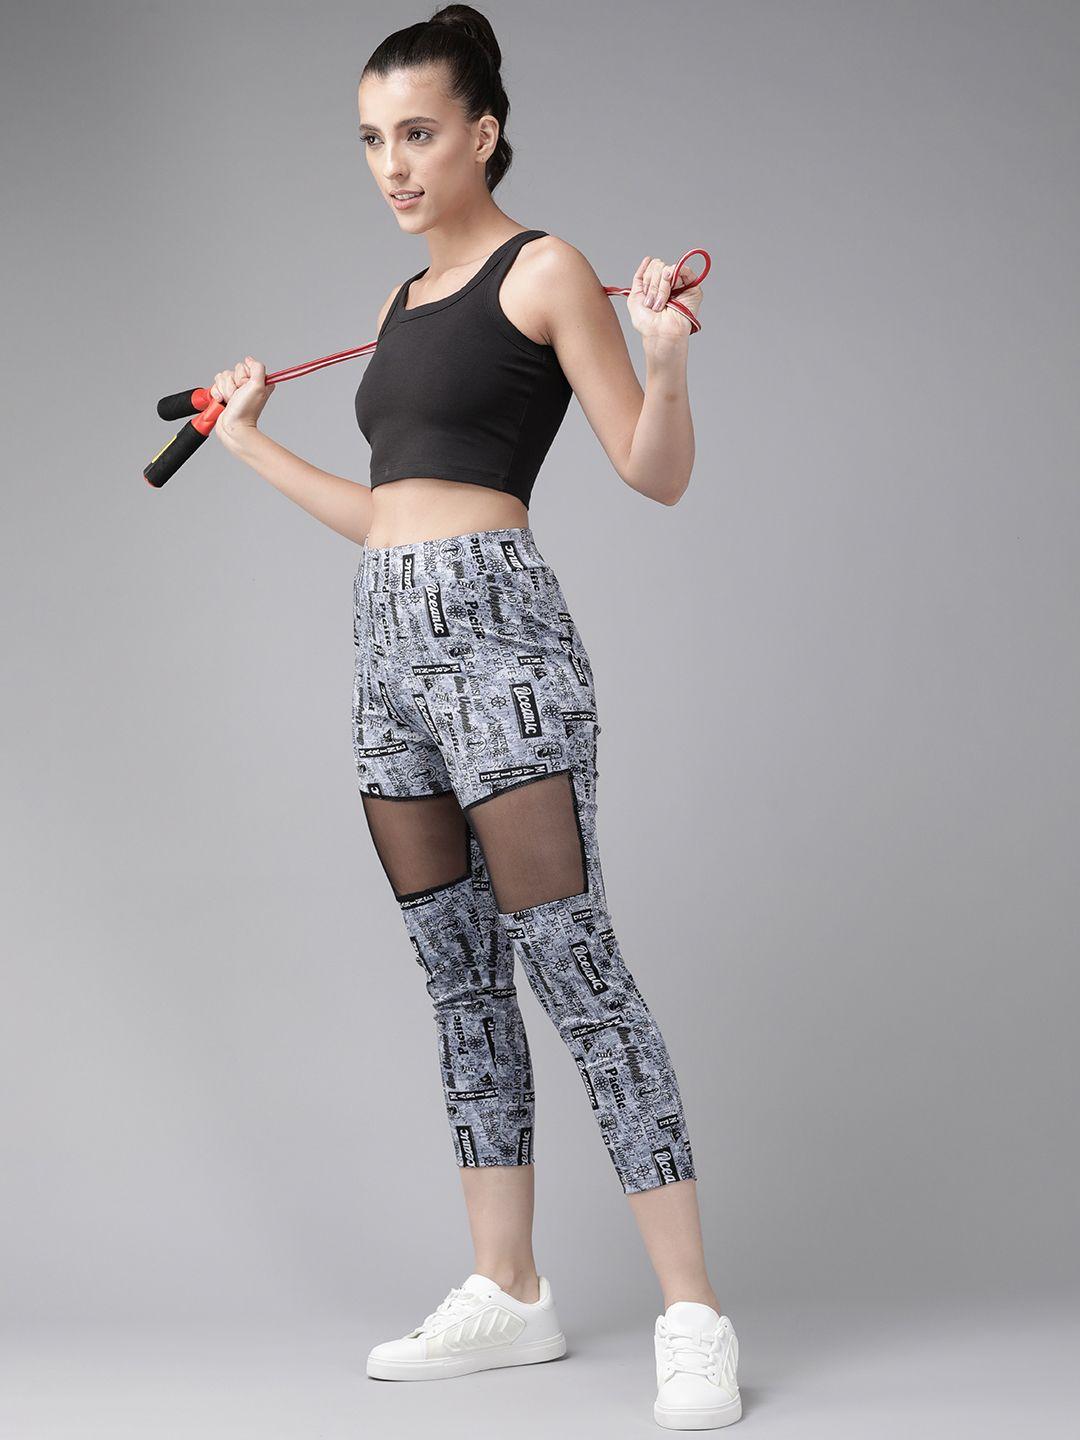 aarika women slim fit printed cropped rapid-dry sports tights